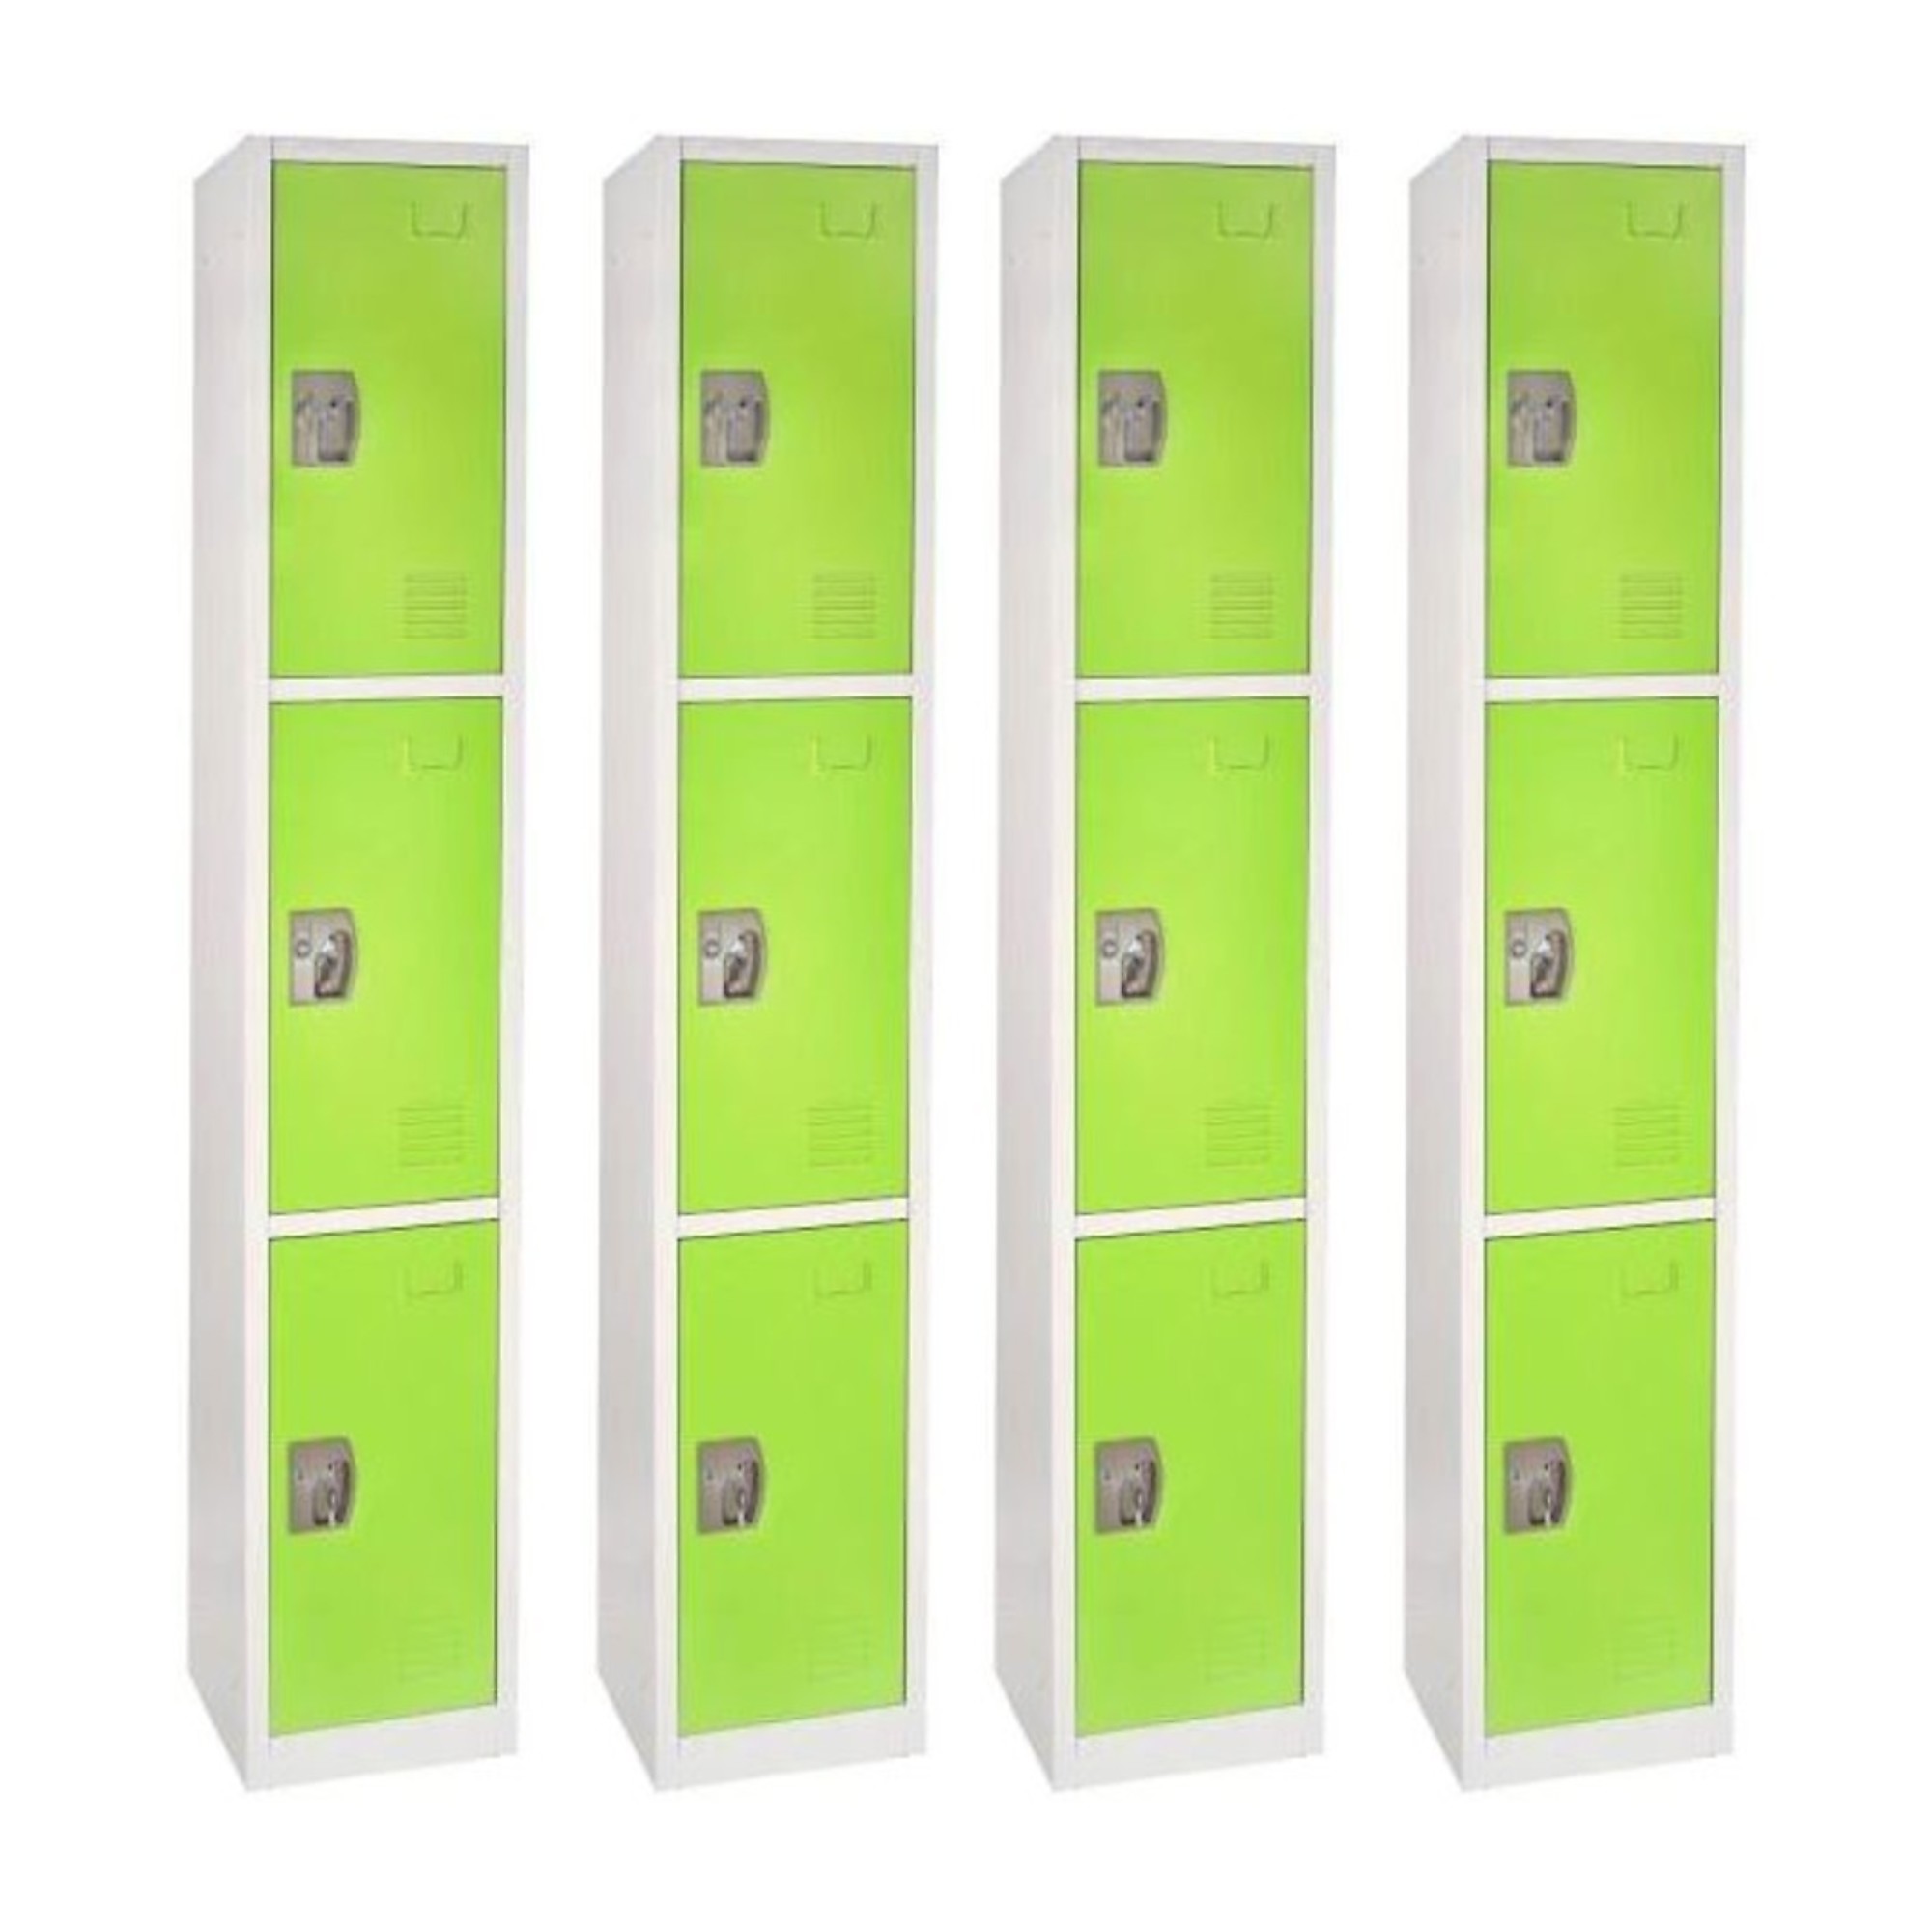 Alpine, 72Inch H 3-Tier Steel Storage Locker, Green, 4-Pack, Height 72 in, Width 12 in, Color Green, Model ADI629-203-GRN-4PK